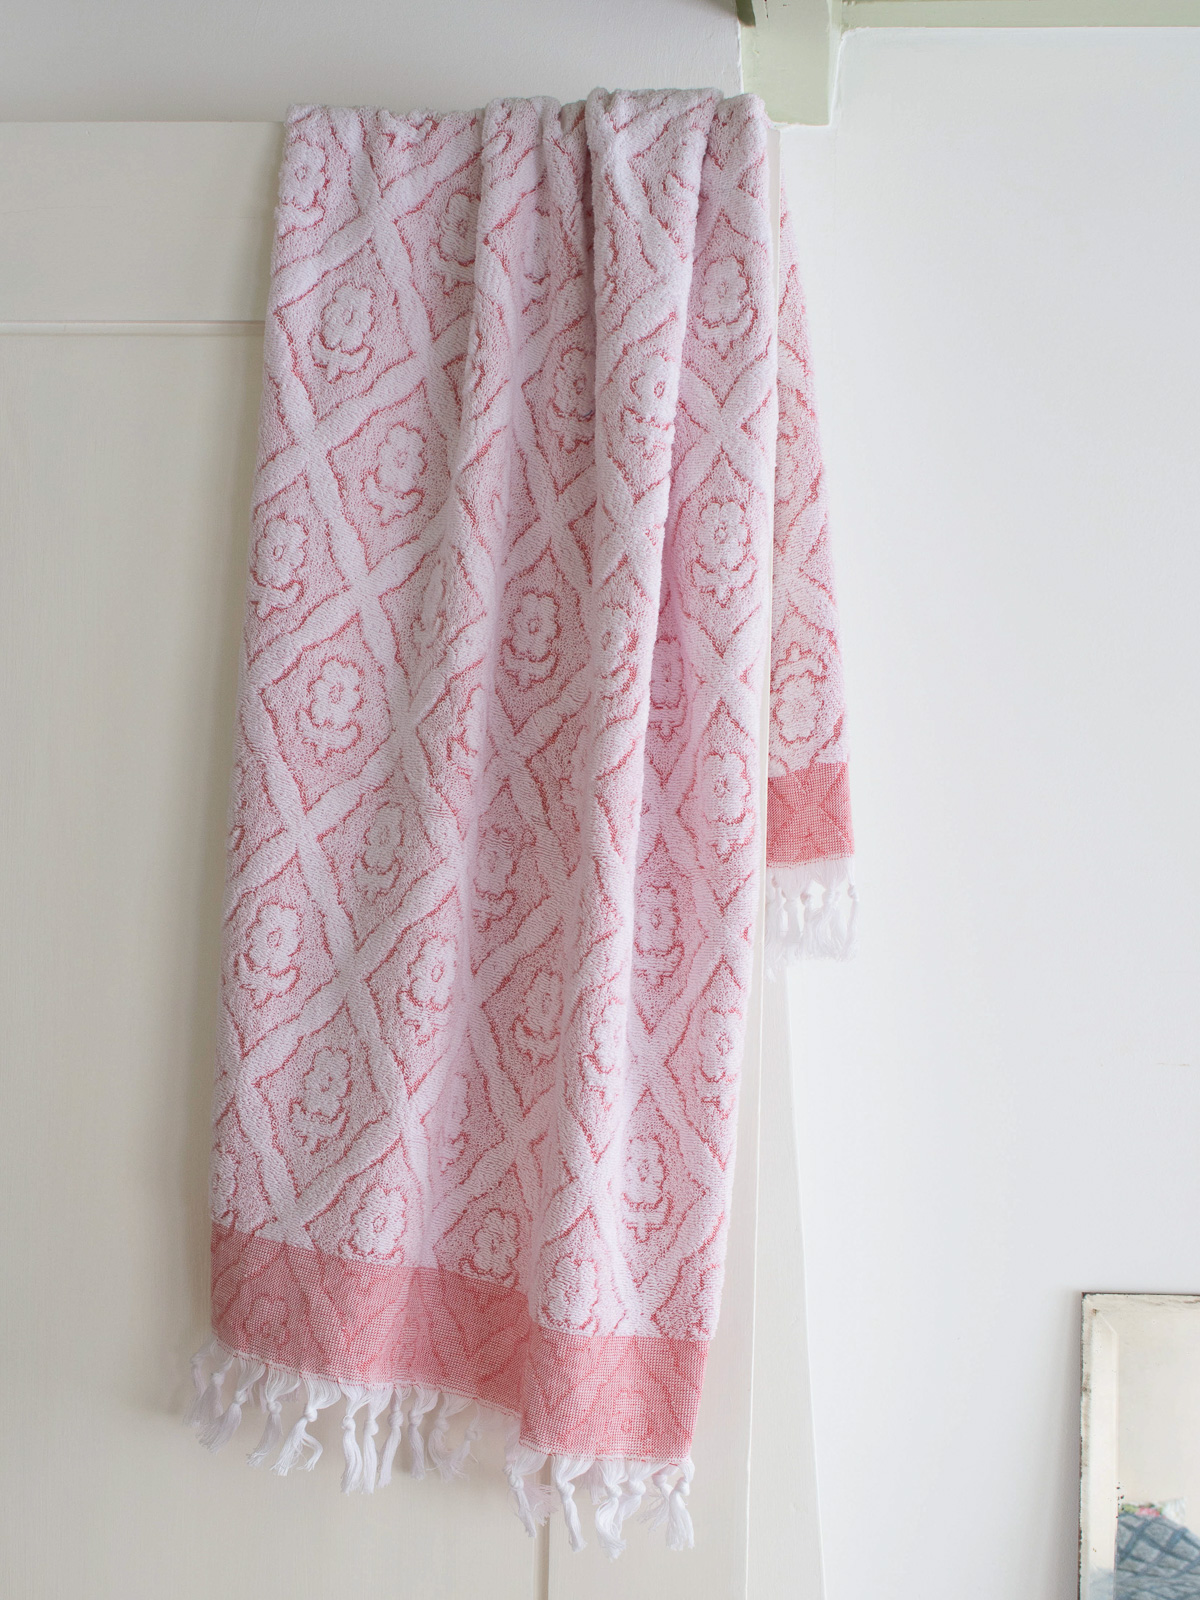 asciugamano rosso mattone - asciugamano doccia spugna Fiore 140x70 cm M -  asciugamani